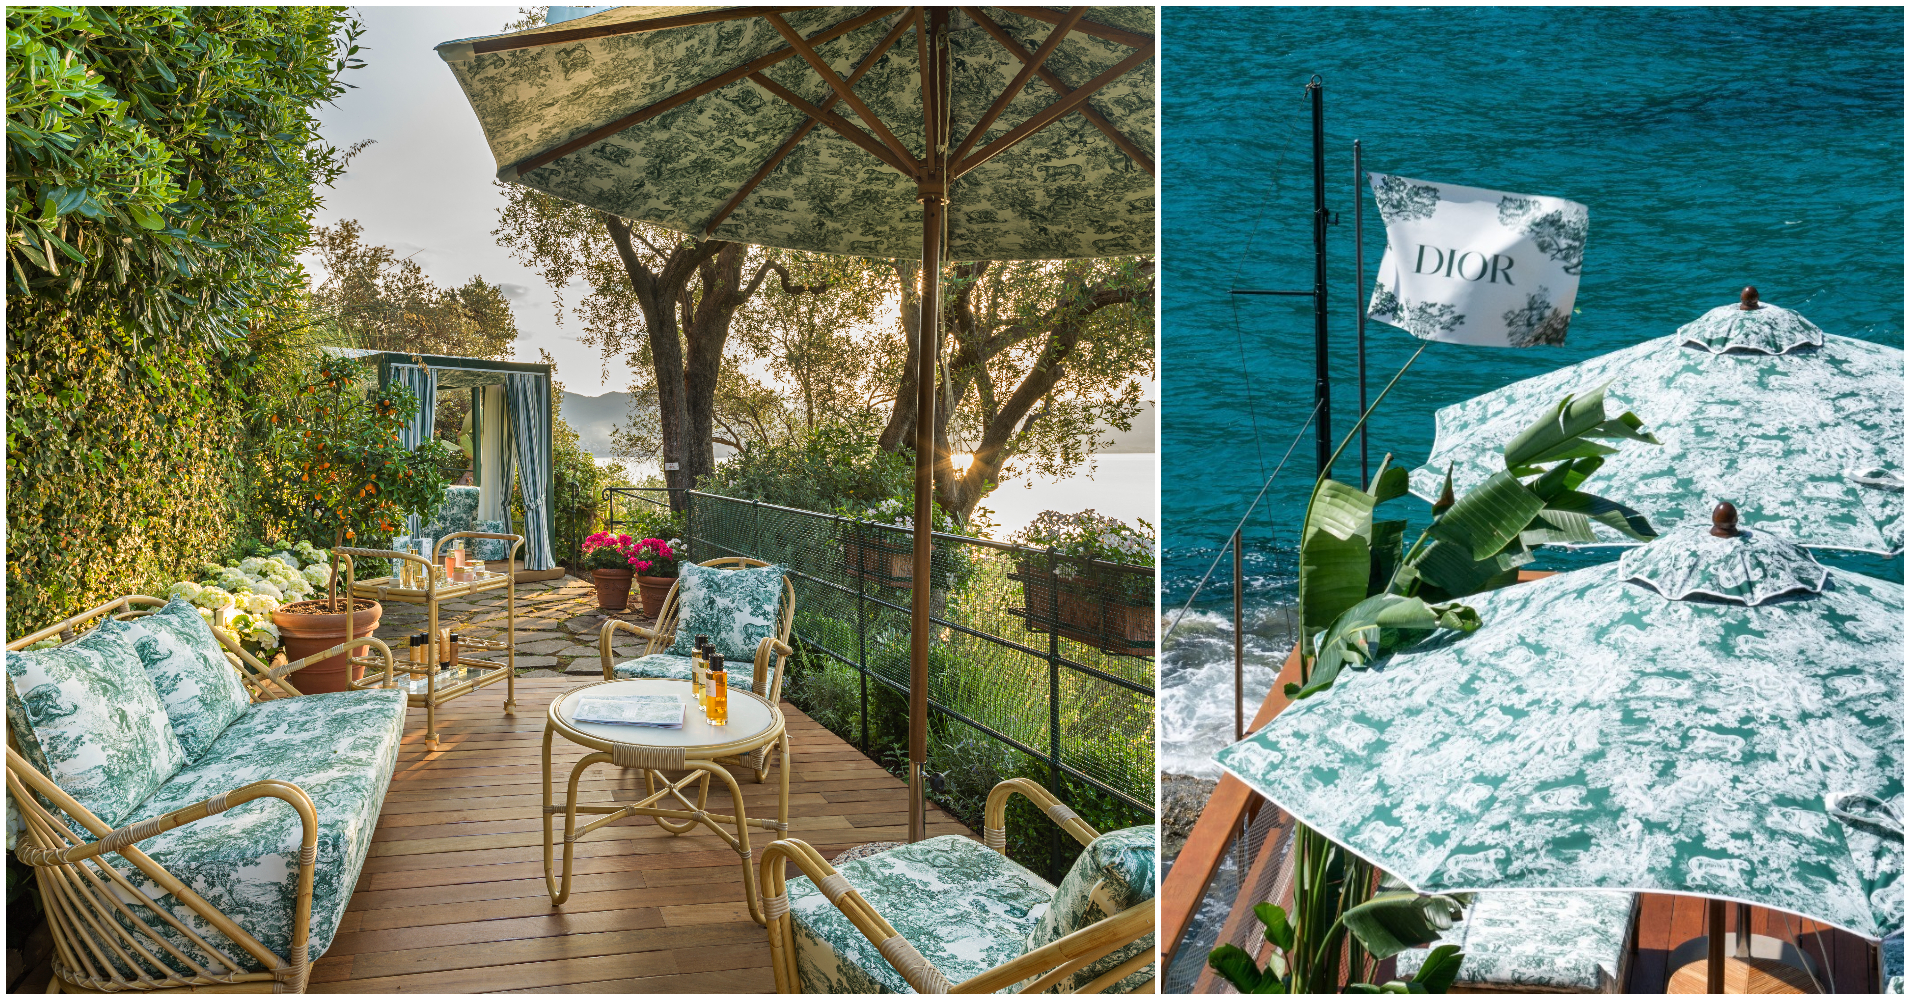 【#Travel】在湛藍濱海享受Dior煥發康養體驗，頌揚百年義式甜蜜生活與夏日風情畫